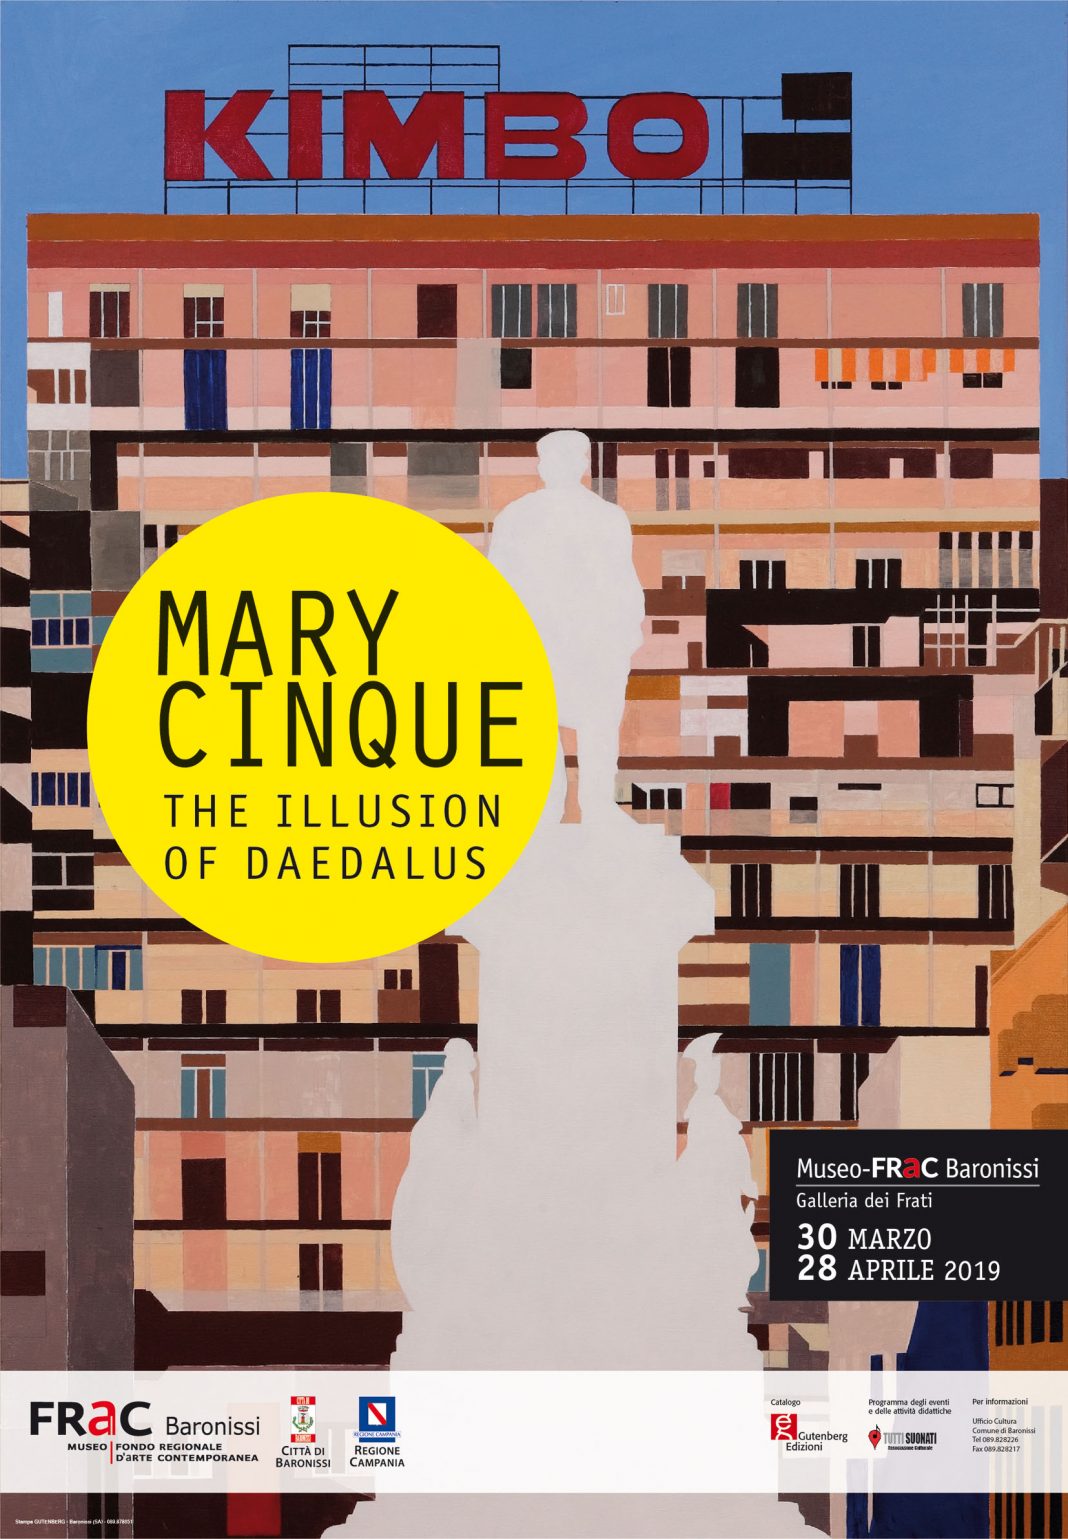 Mary Cinque – The illusion of Daedalushttps://www.exibart.com/repository/media/eventi/2019/03/mary-cinque-8211-the-illusion-of-daedalus-1068x1539.jpg